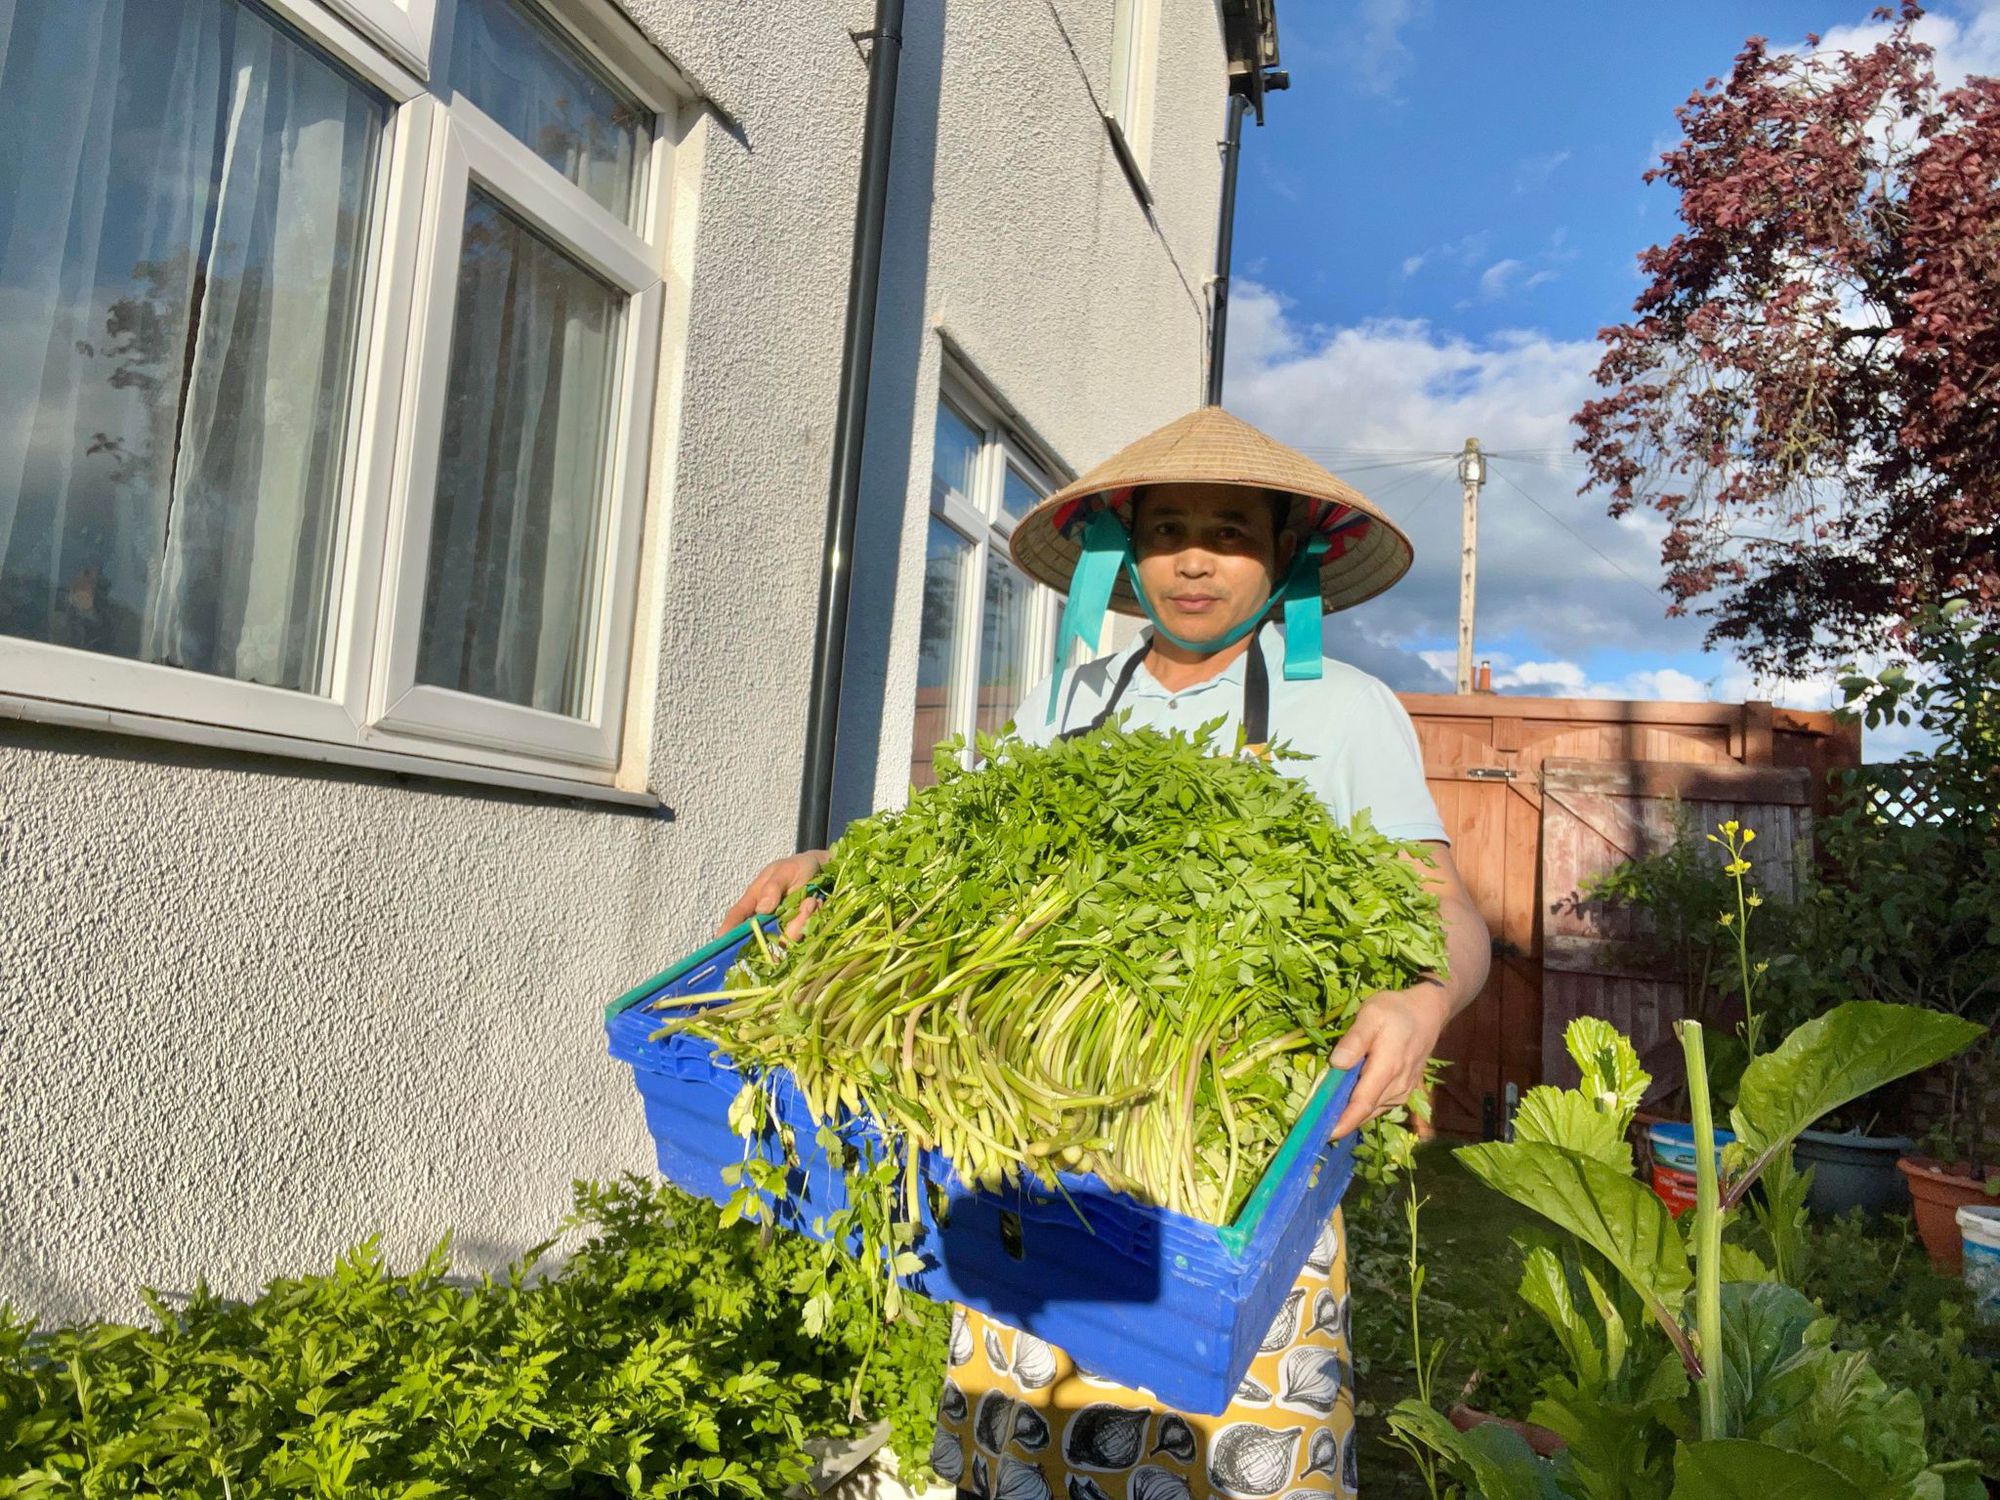 Ngỡ ngàng vườn rau “di động” siêu đầy đủ rau Việt của người đàn ông gốc Việt ở Anh - Ảnh 1.